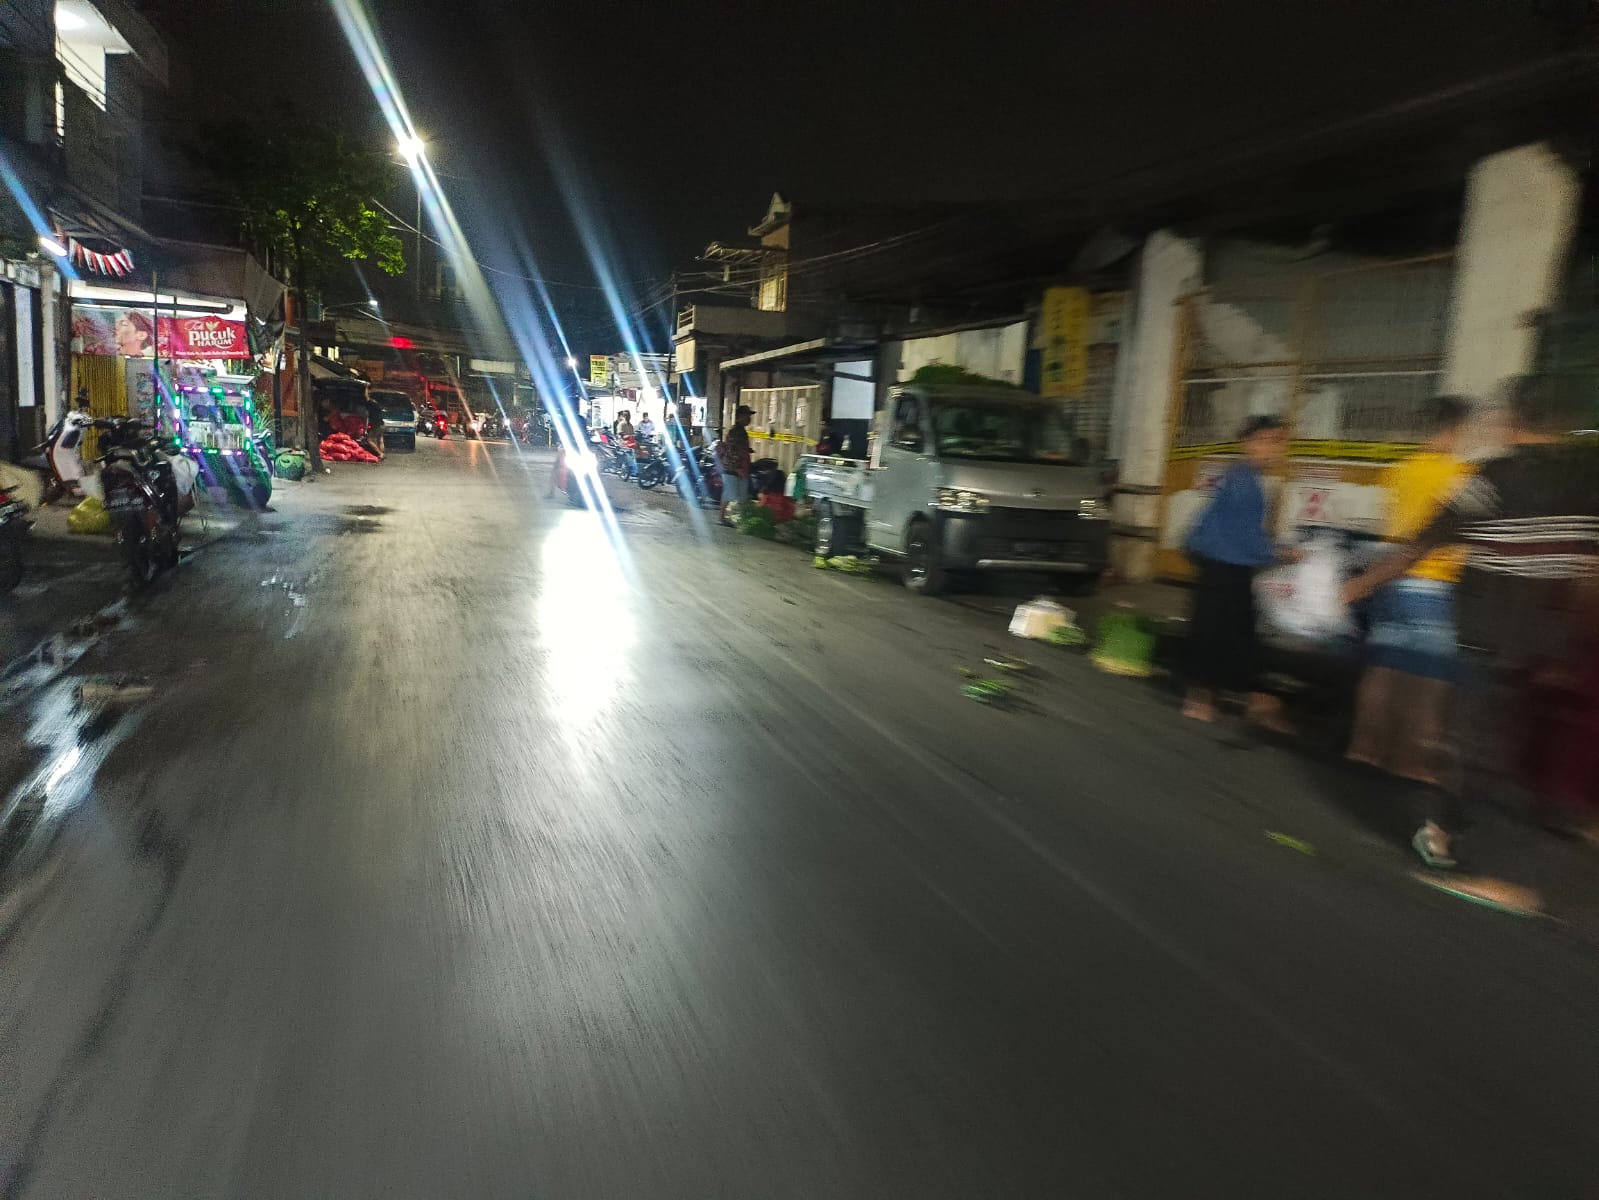 Pemkot Surabaya Siaga di 12 Titik Jalan untuk Halau Pedagang Liar di Pandegiling, Tapi Tak Mempan